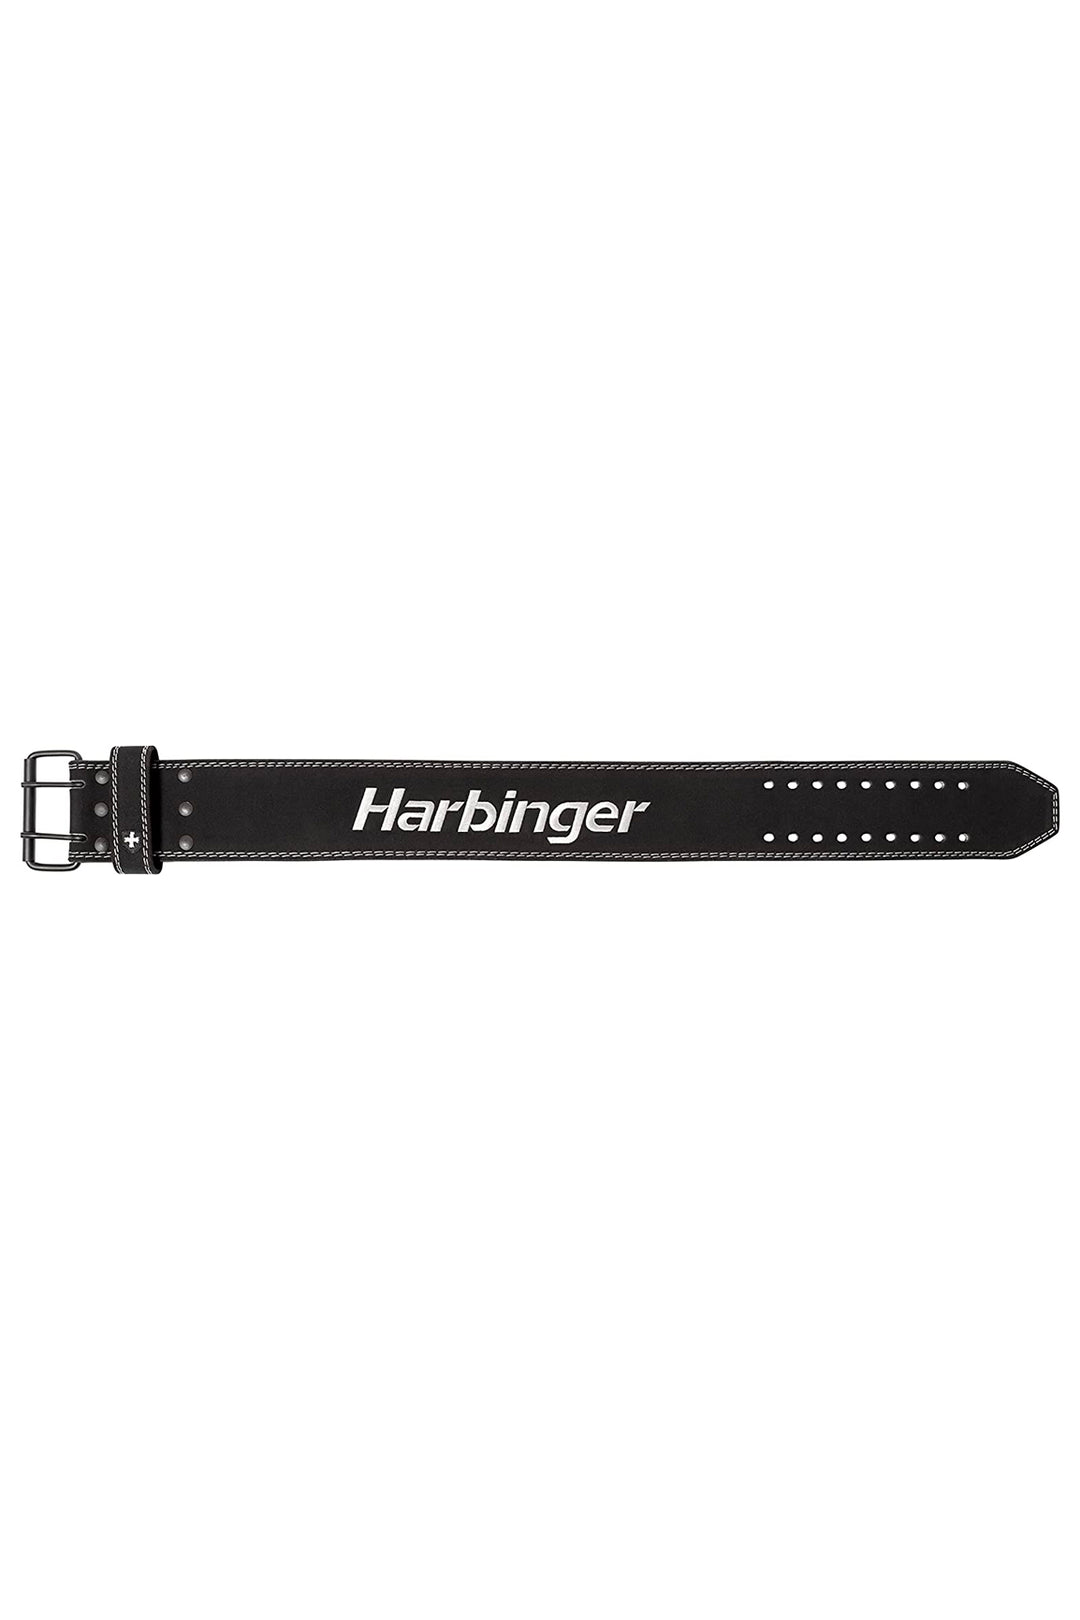 Harbinger Powerlifting Belt 10mm Black